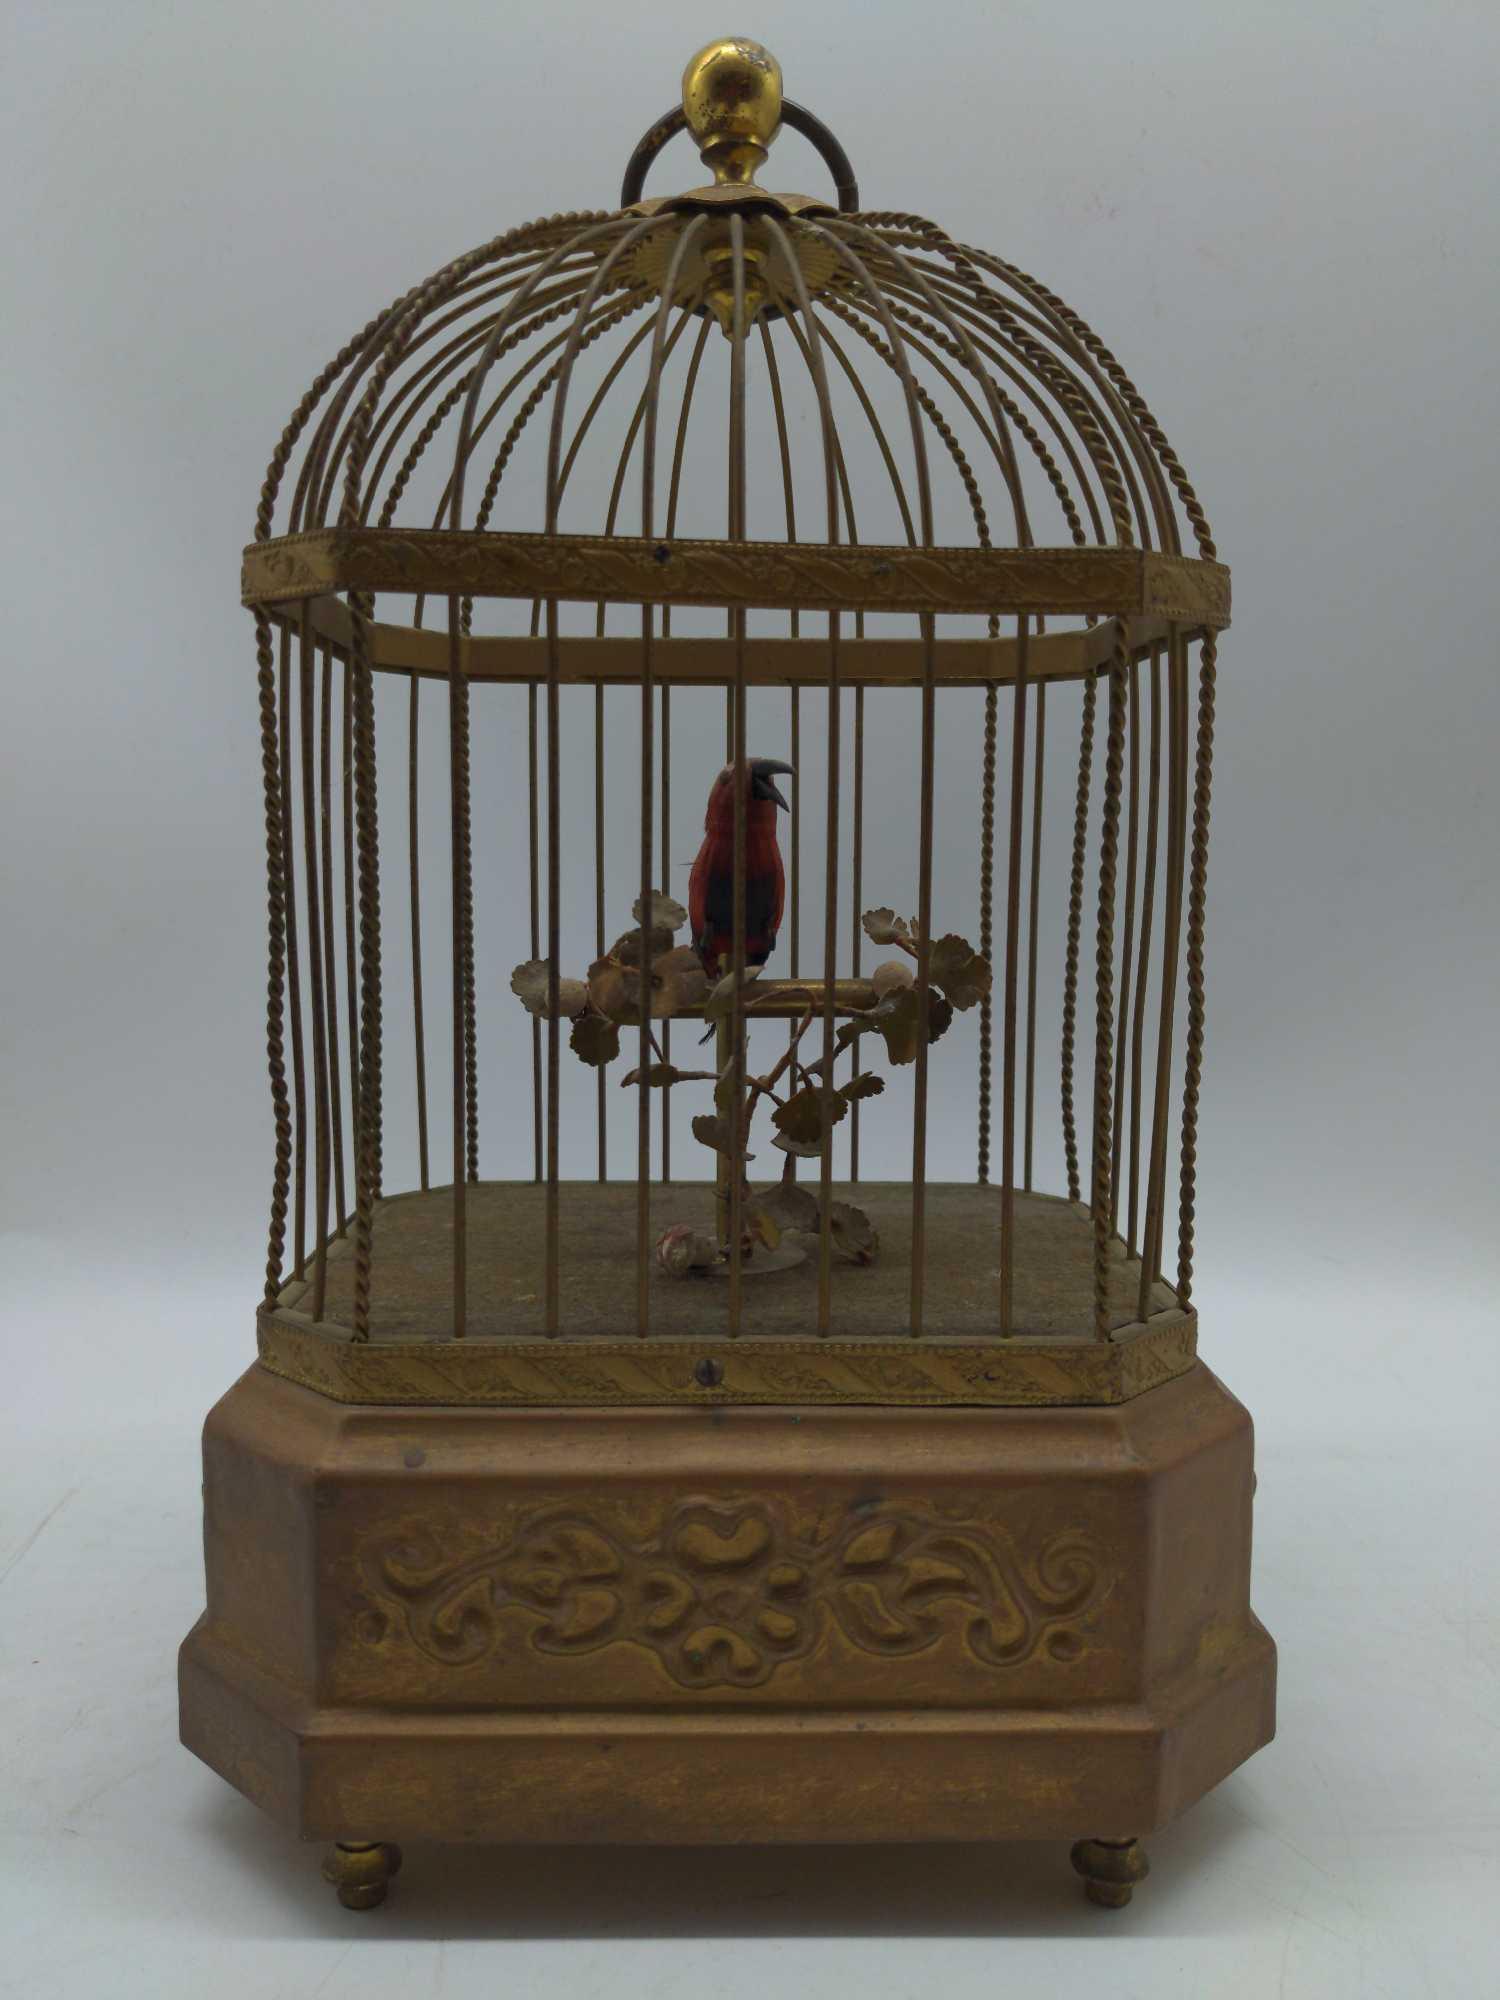 Antique Brass birdcage with Singing Bird